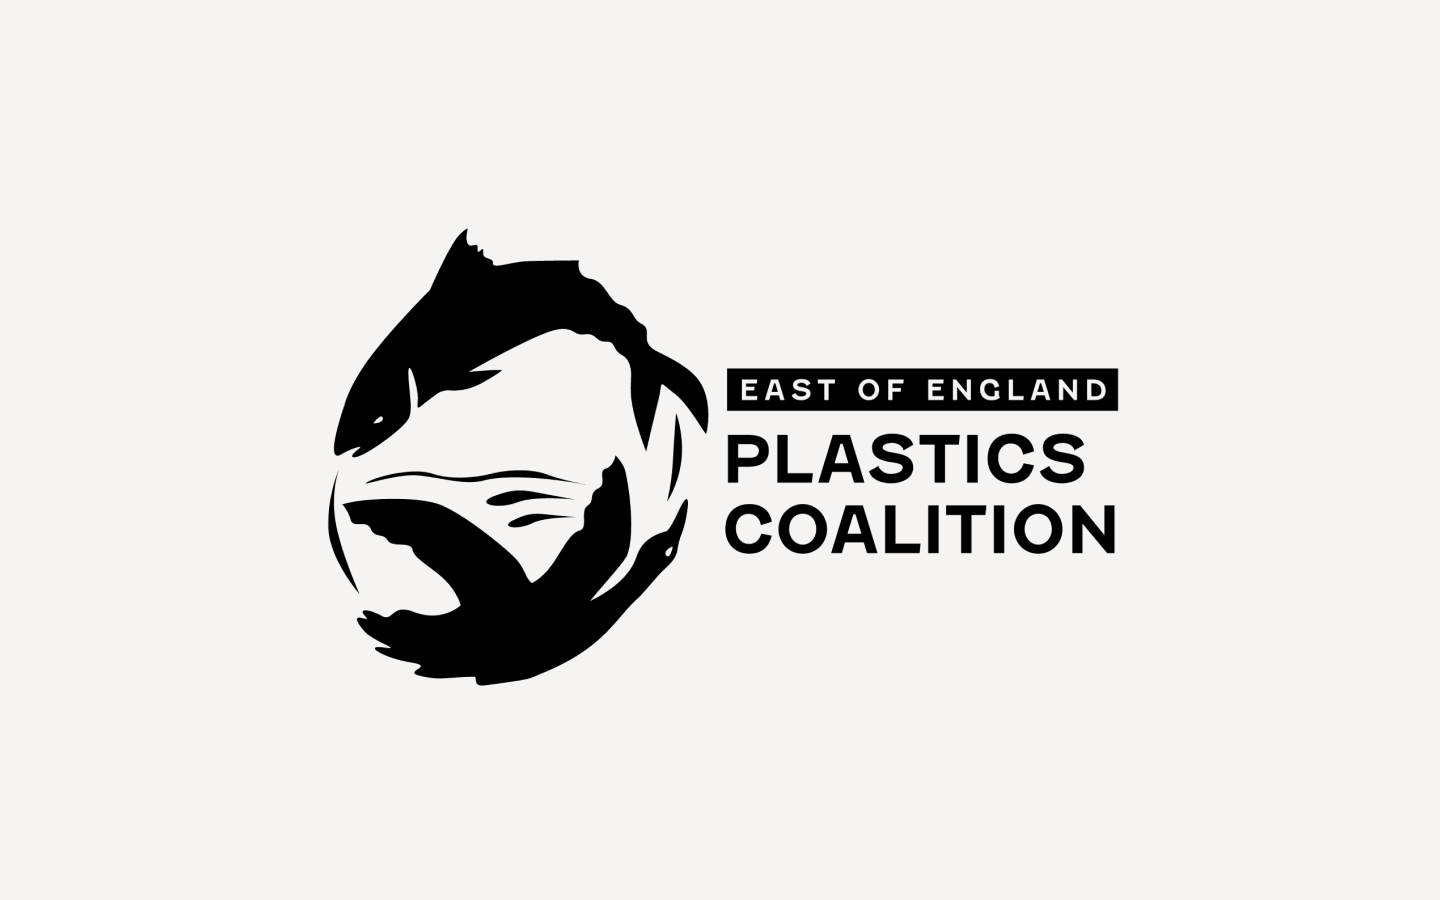 Plastic-Coalition-Paul-Pajot-12